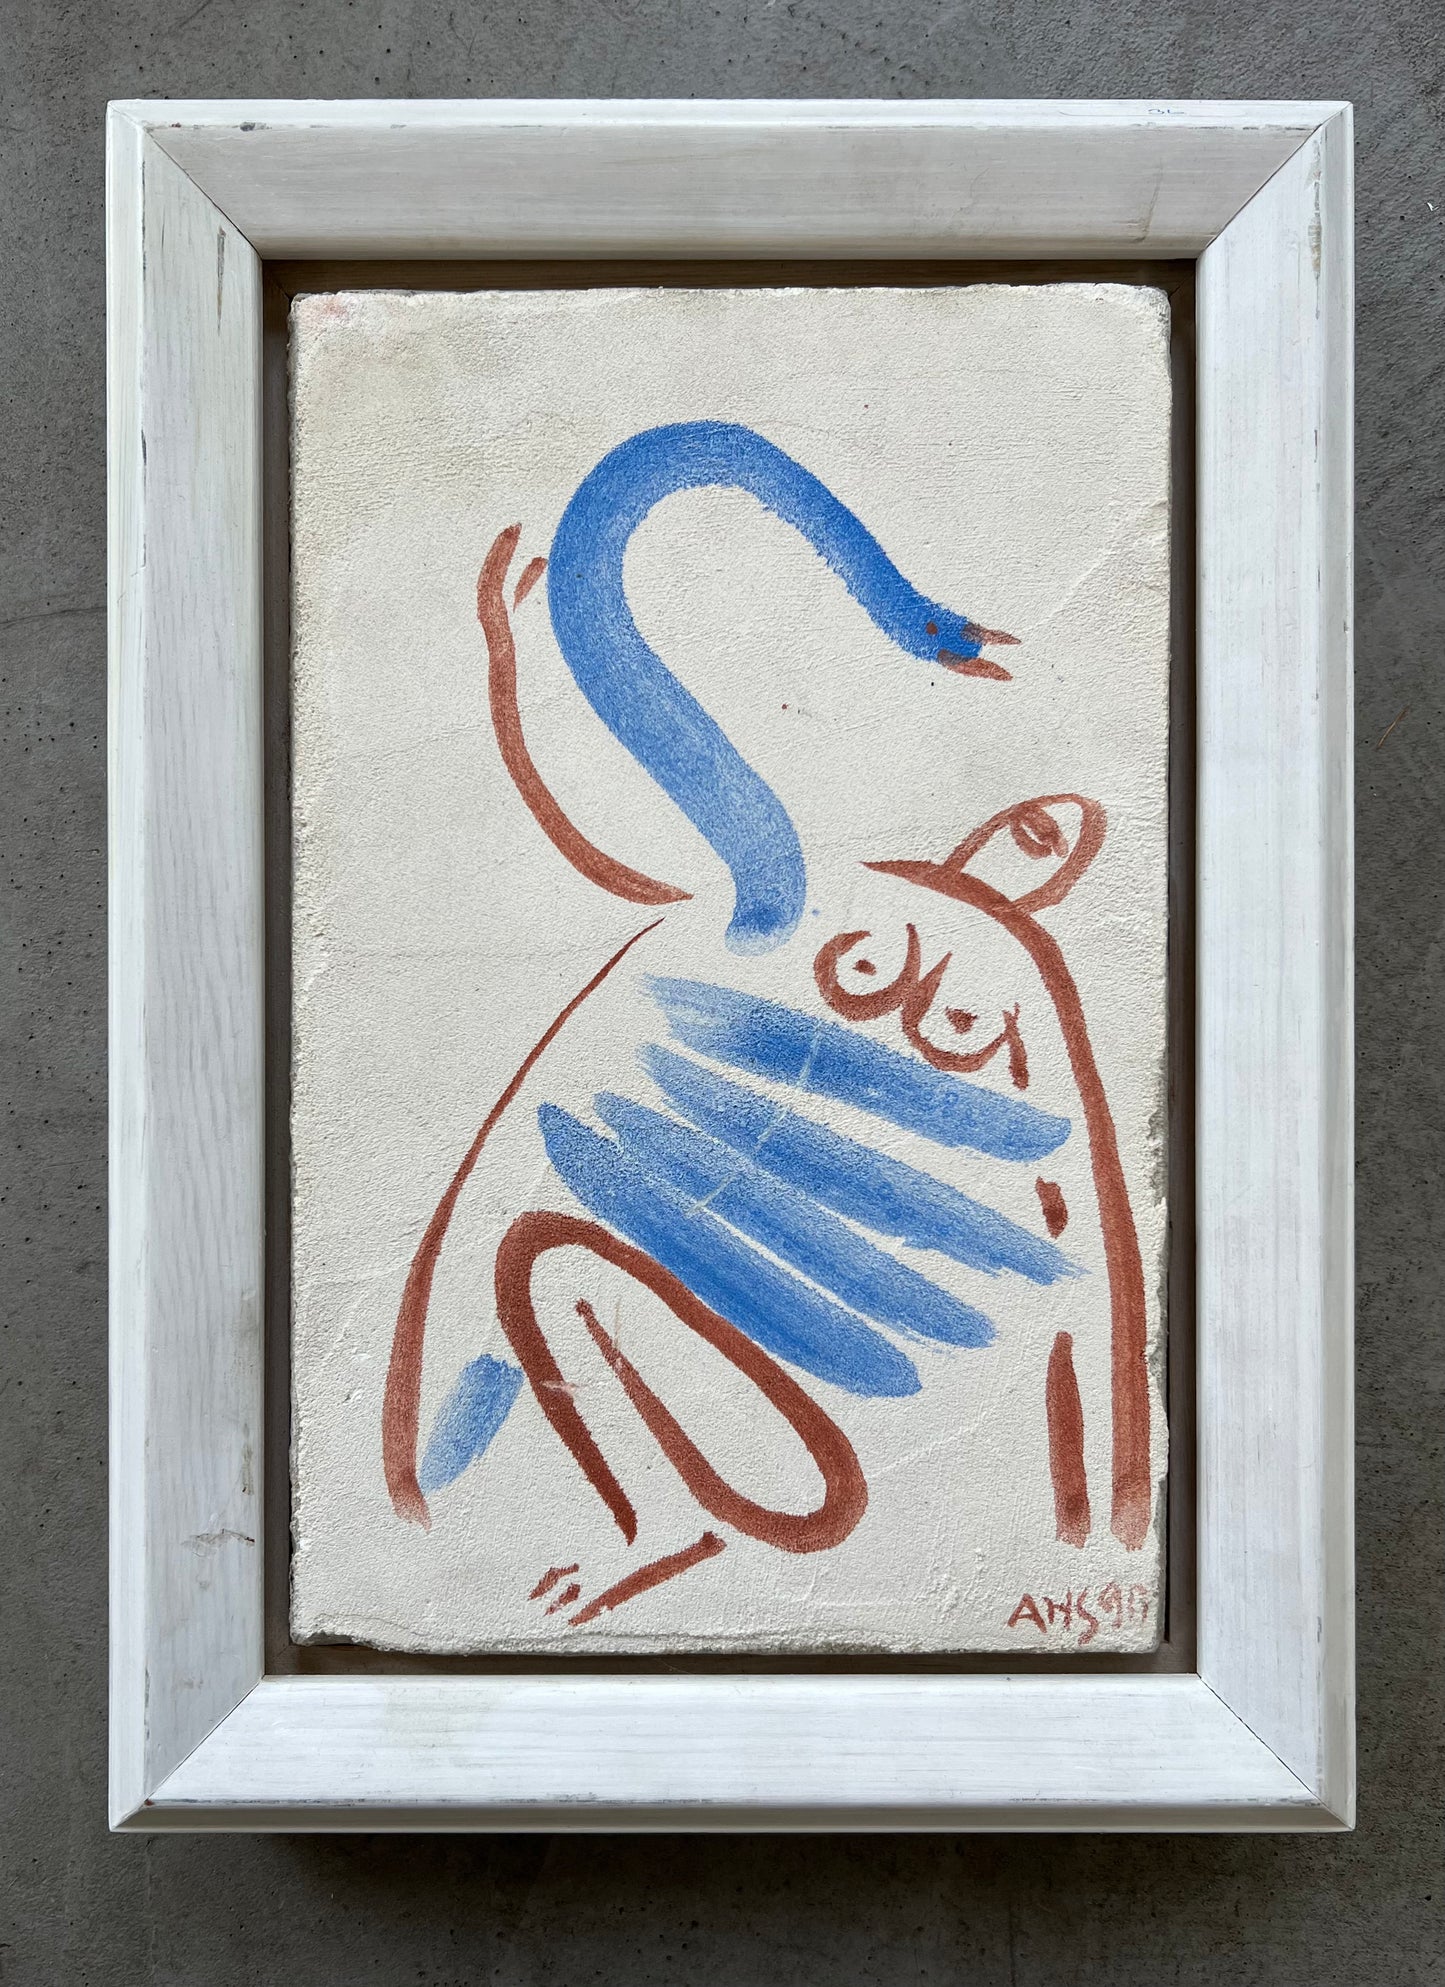 Arne Haugen Sørensen. “Leda og svanen”, 1990